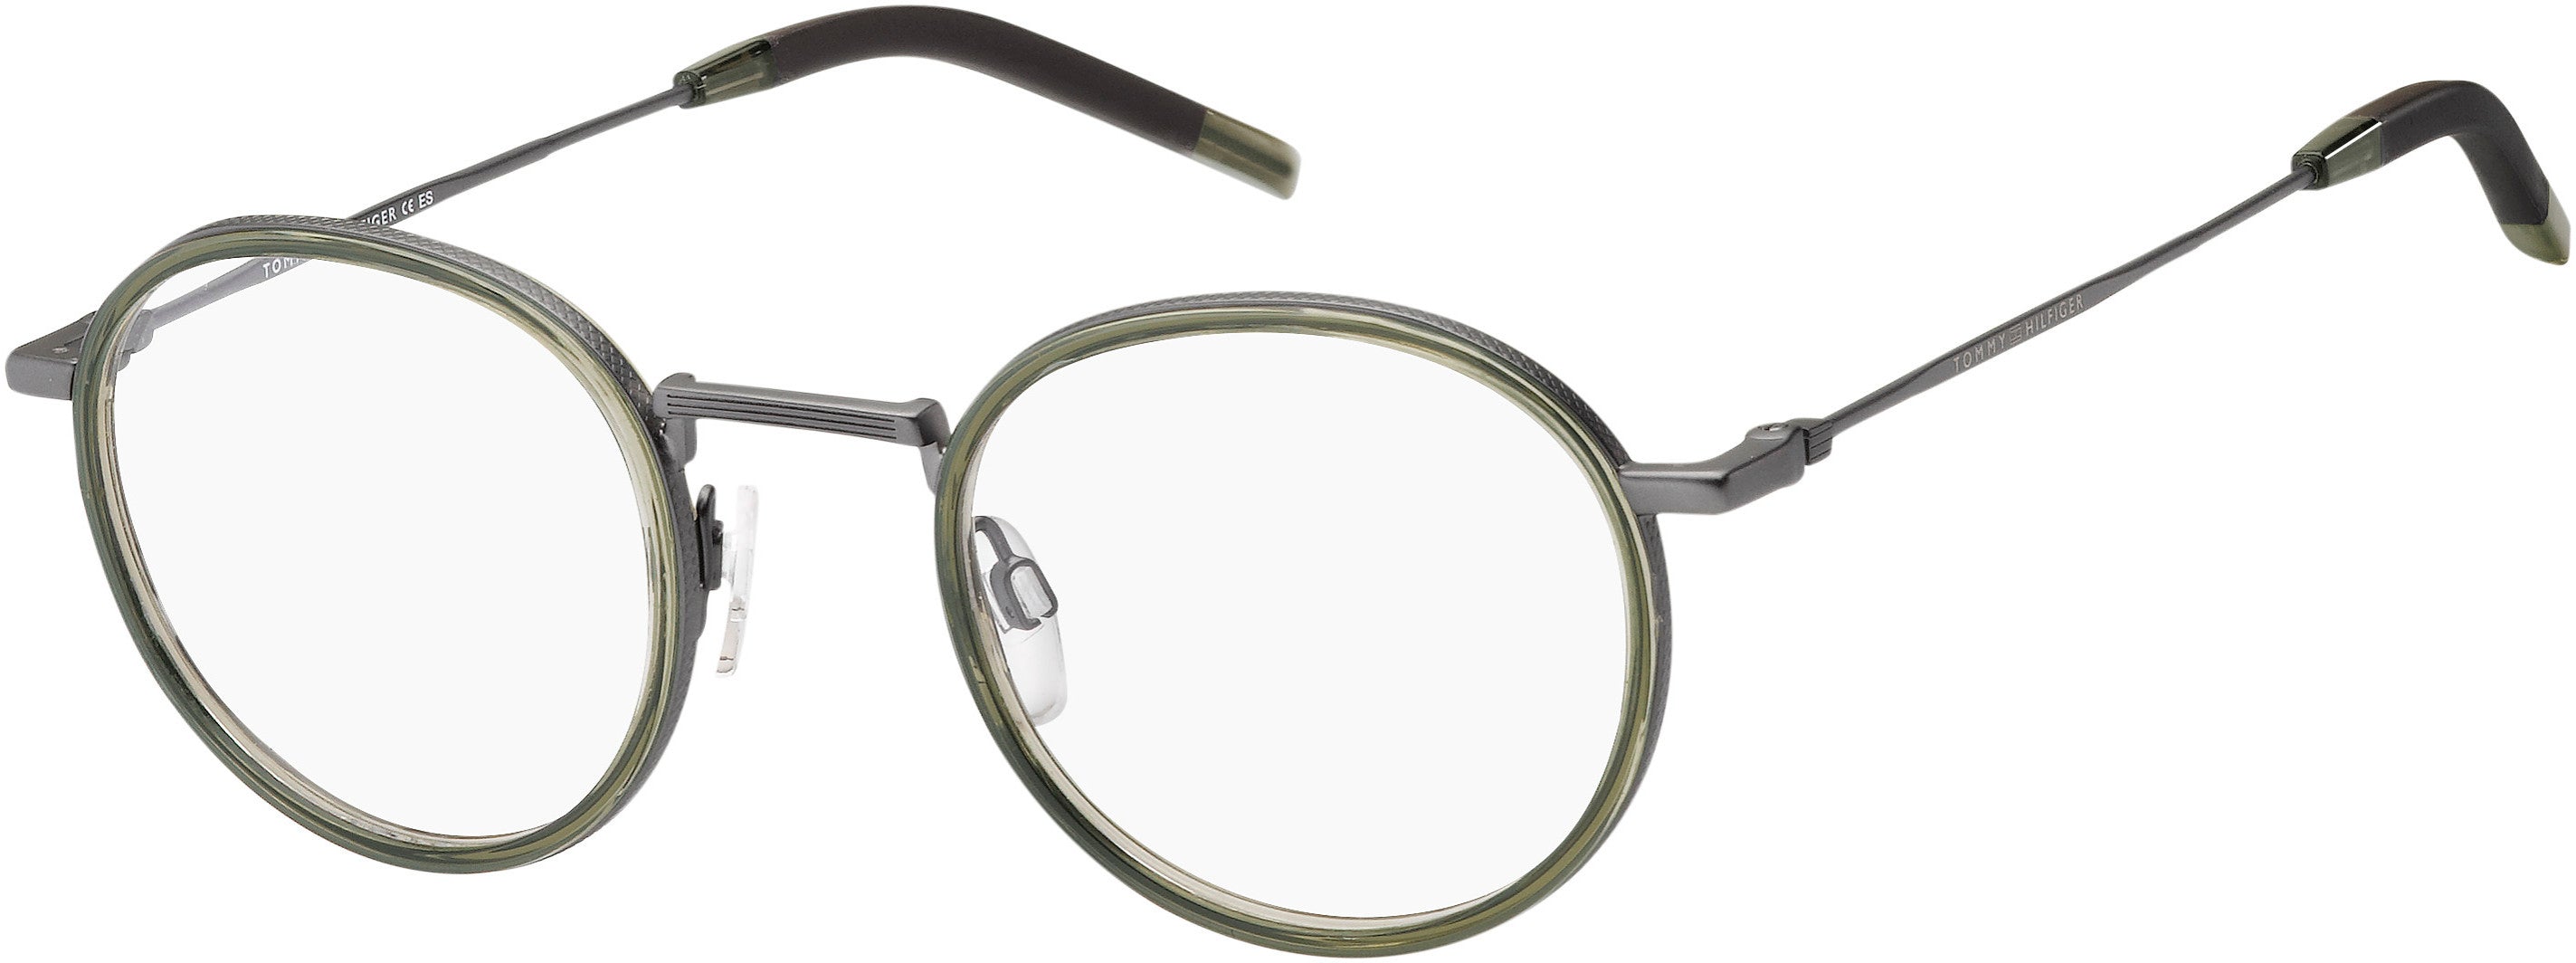 Tommy Hilfiger T. Hilfiger 1815 Oval Modified Eyeglasses 04C3-04C3  Olive (00 Demo Lens)